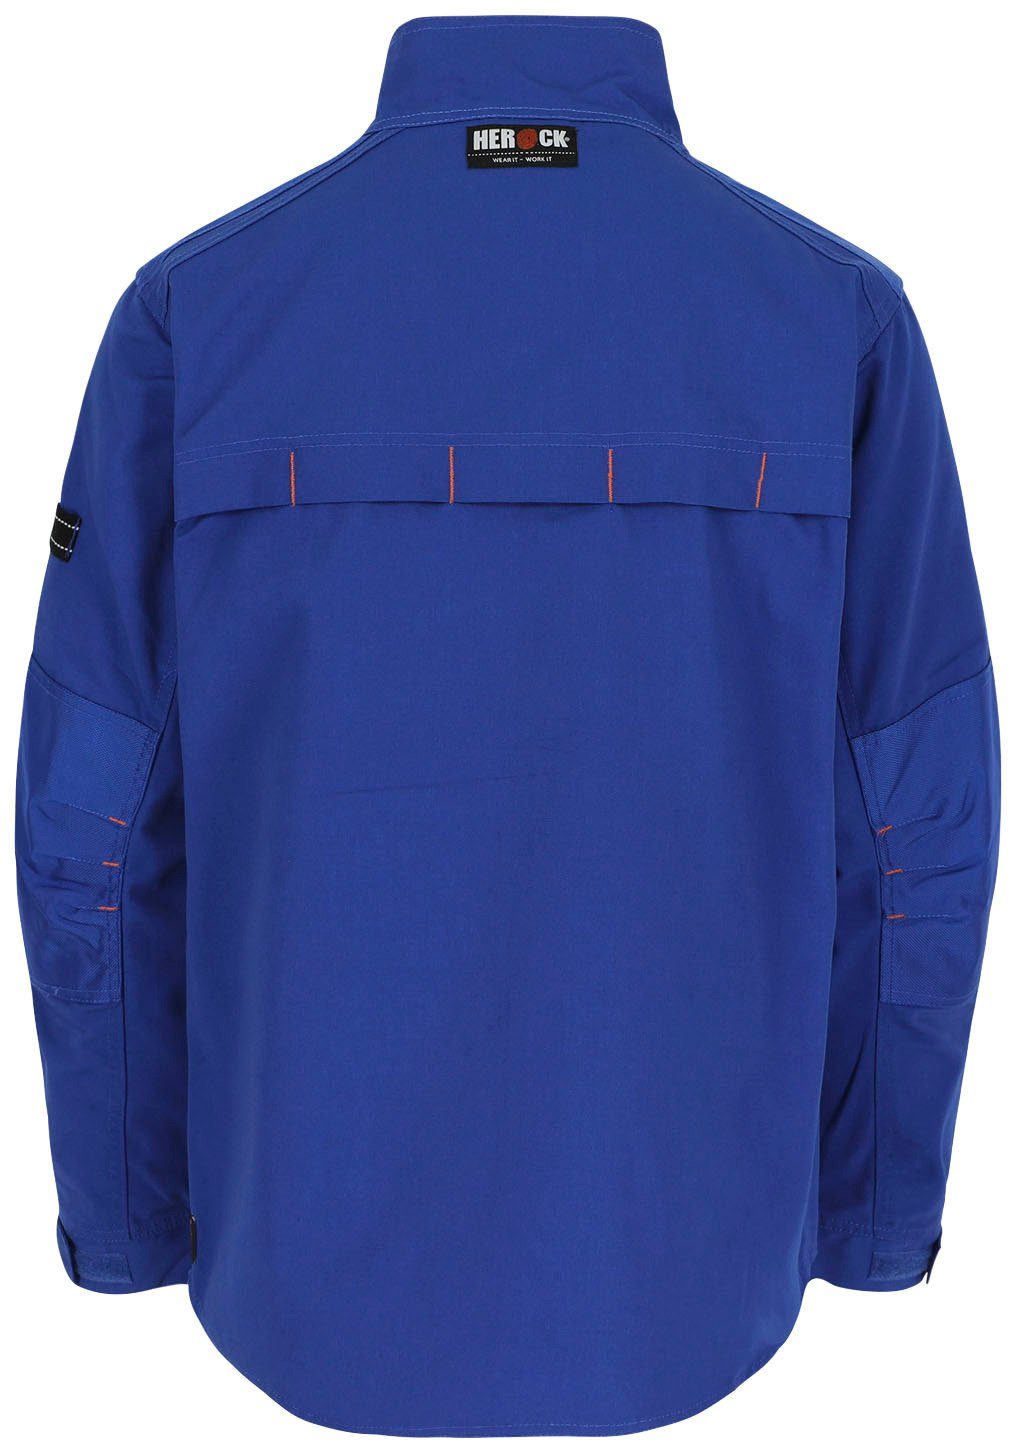 Taschen Anzar - Arbeitsjacke - Jacke Wasserabweisend robust verstellbare Bündchen Herock - blau 7